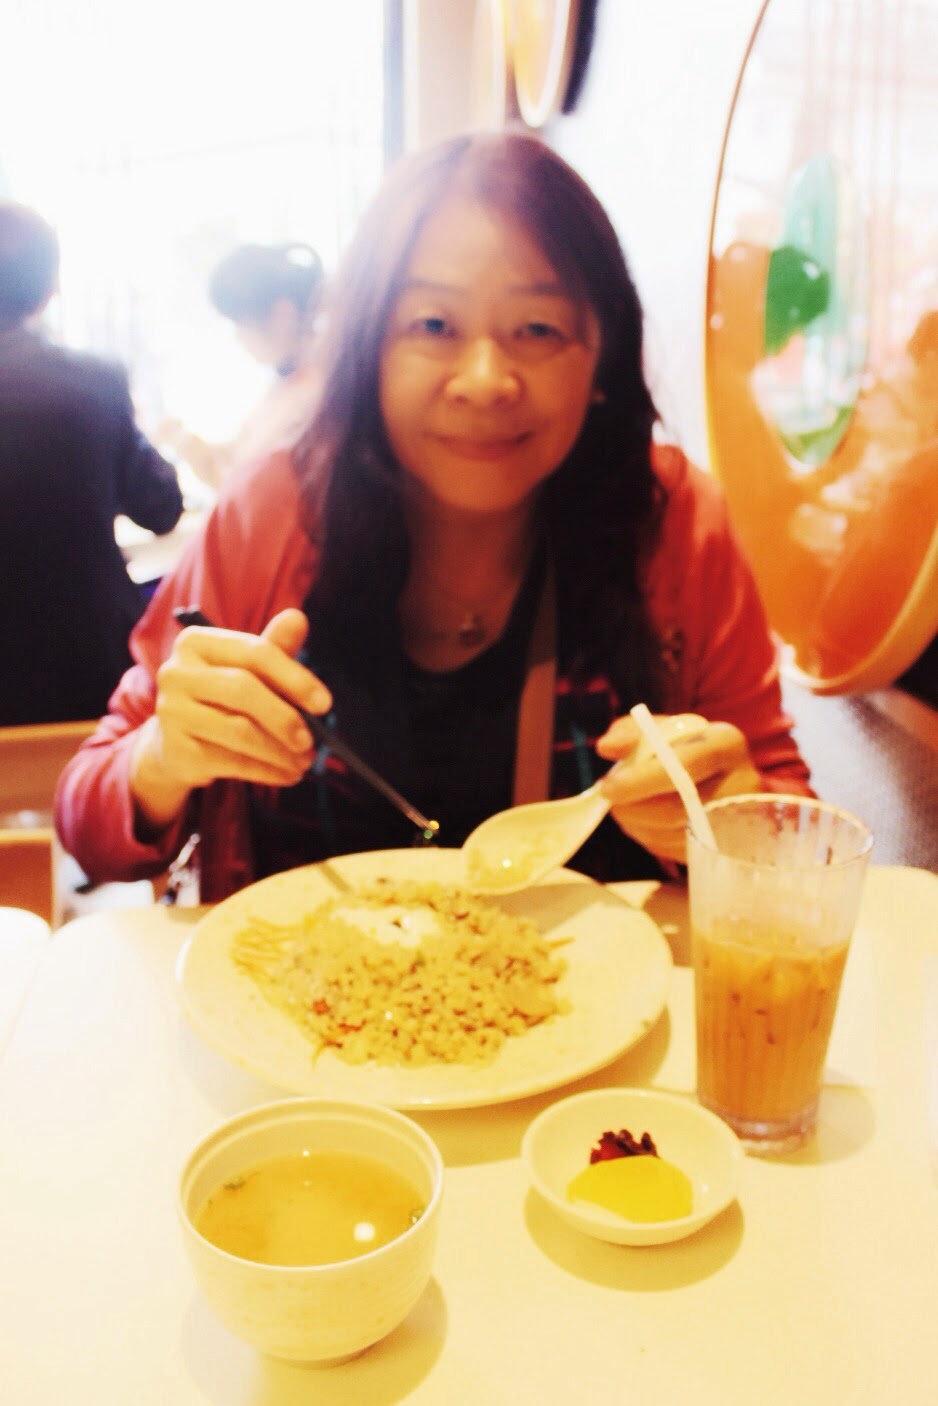 蓬萊拉麵屋 Zen Noodle Cafe @ Ngong Ping, Lantau Island, Hong Kong 香港大嶼山昂坪市集